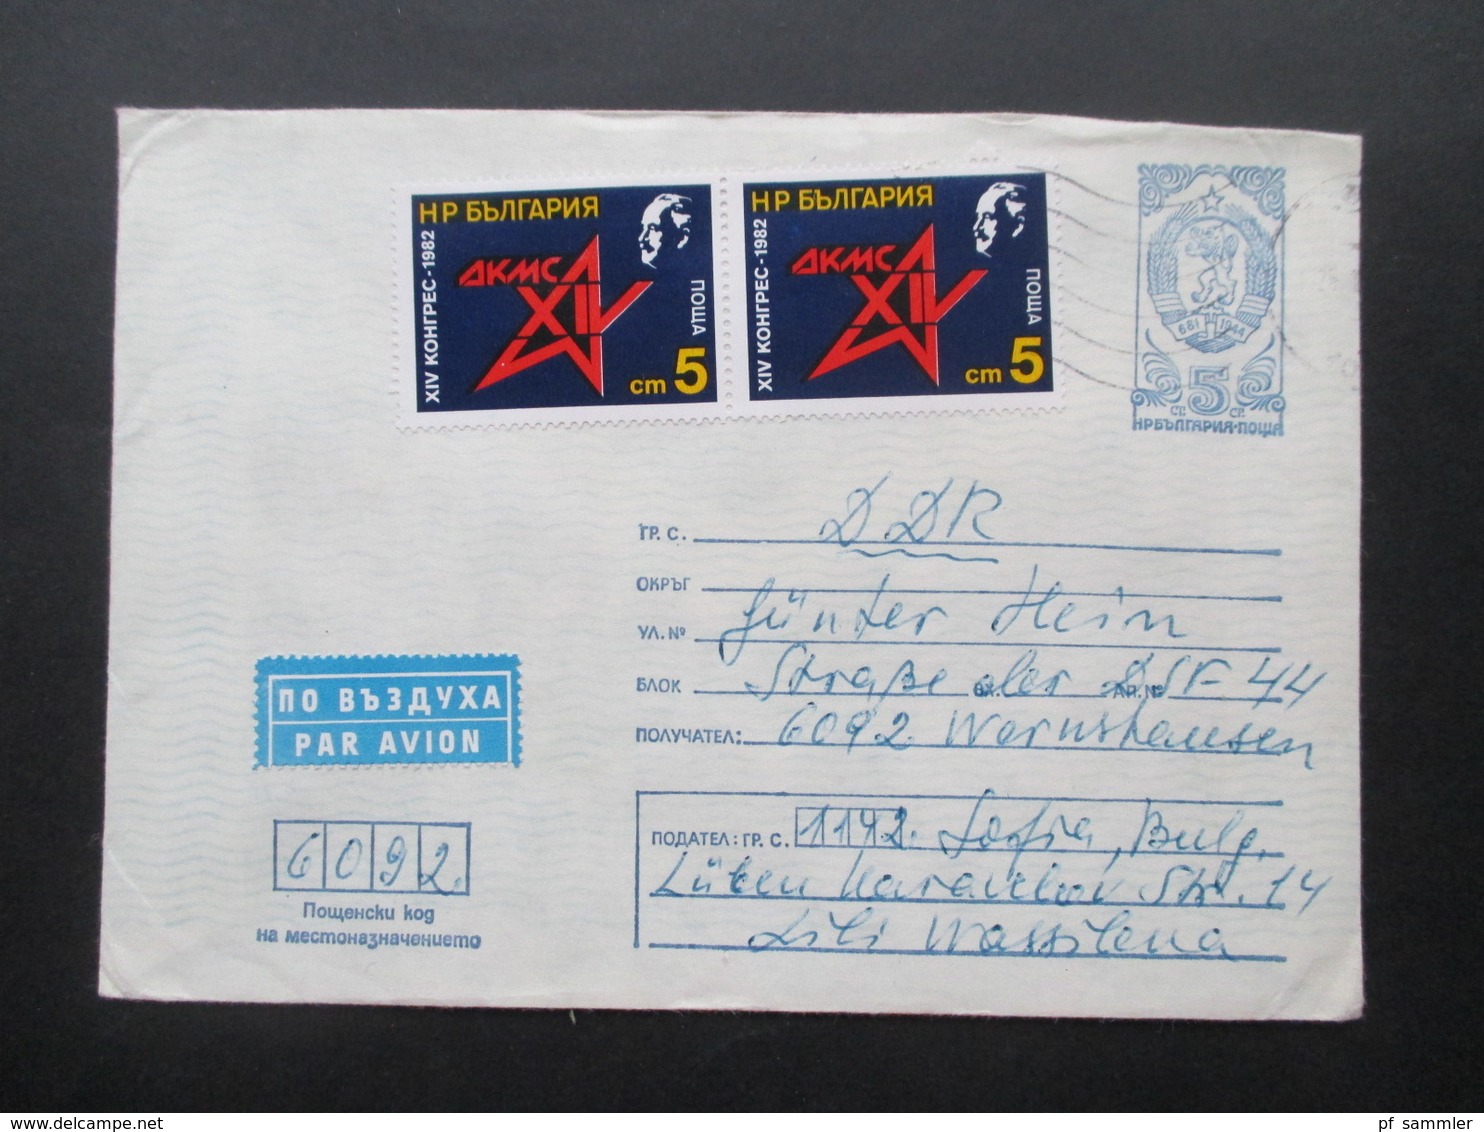 Bulgarien 1980er Jahre GA Umschläge alle als Luftpost in die DDR viele schöne Zusatzfrankaturen! Insgesamt 38 Belege